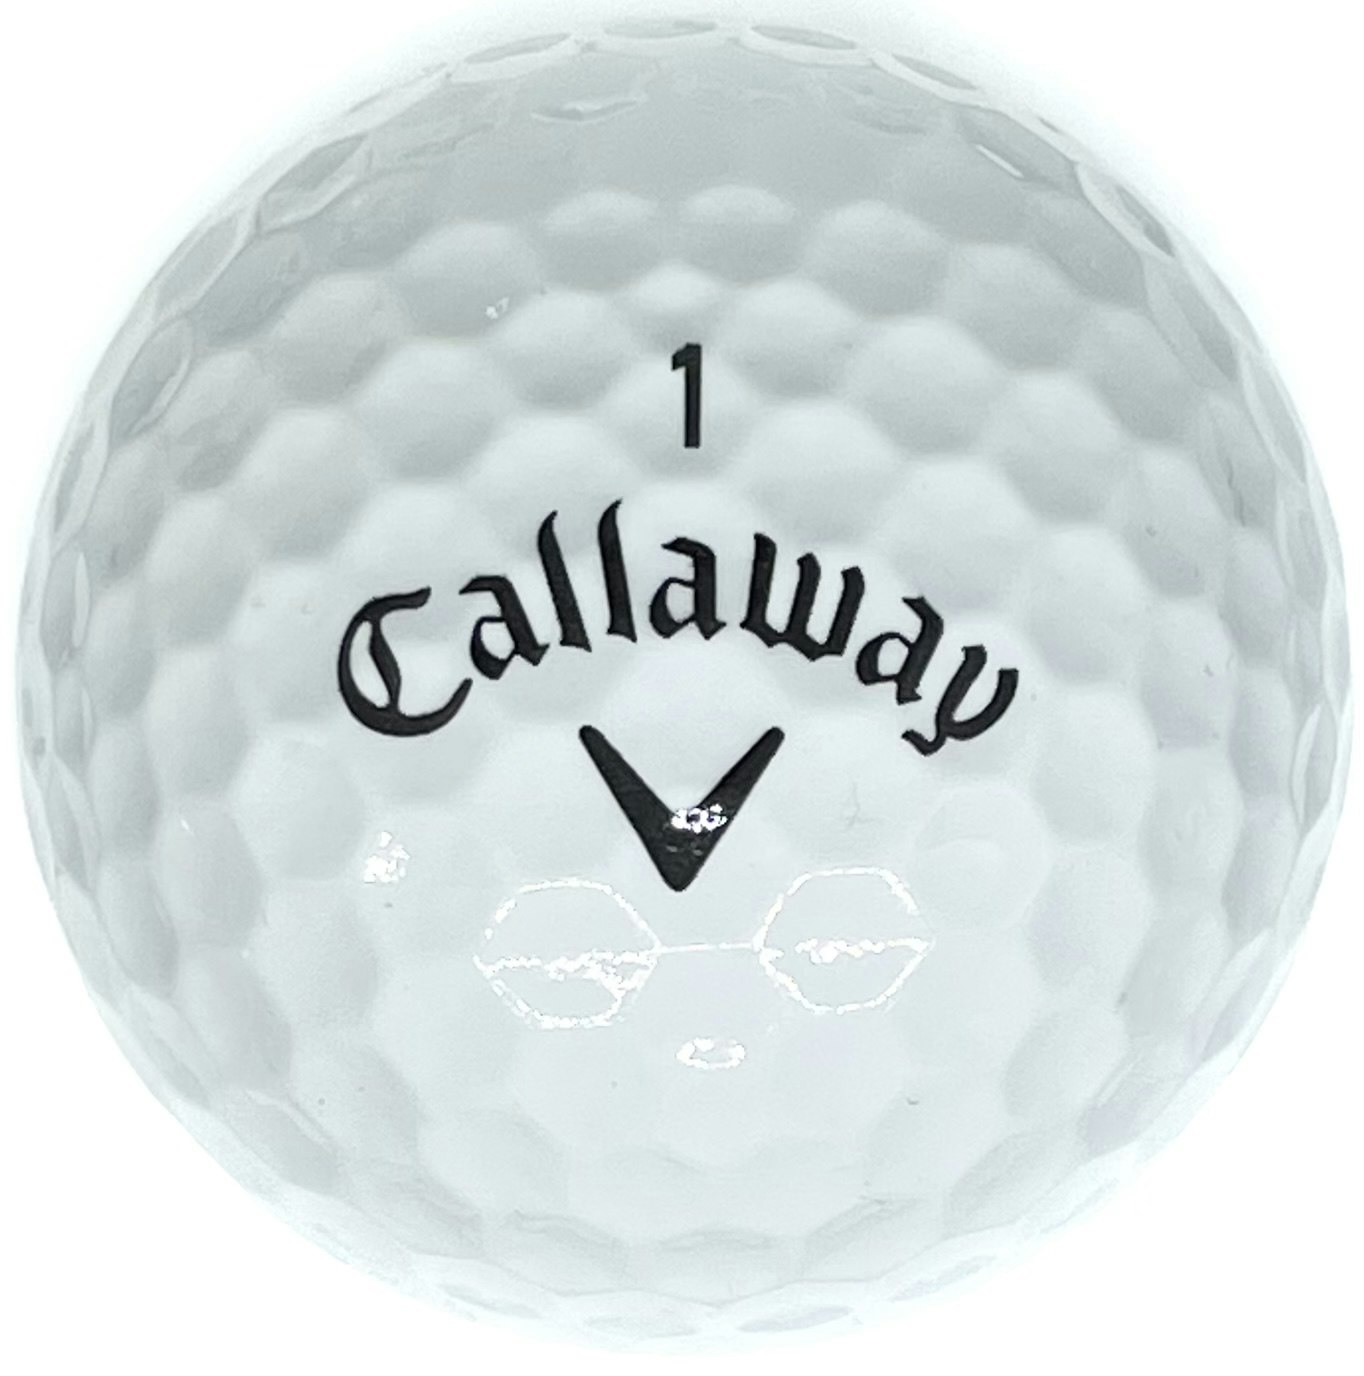 Detta är en vit golfboll, Callaway Speed Regime SR2